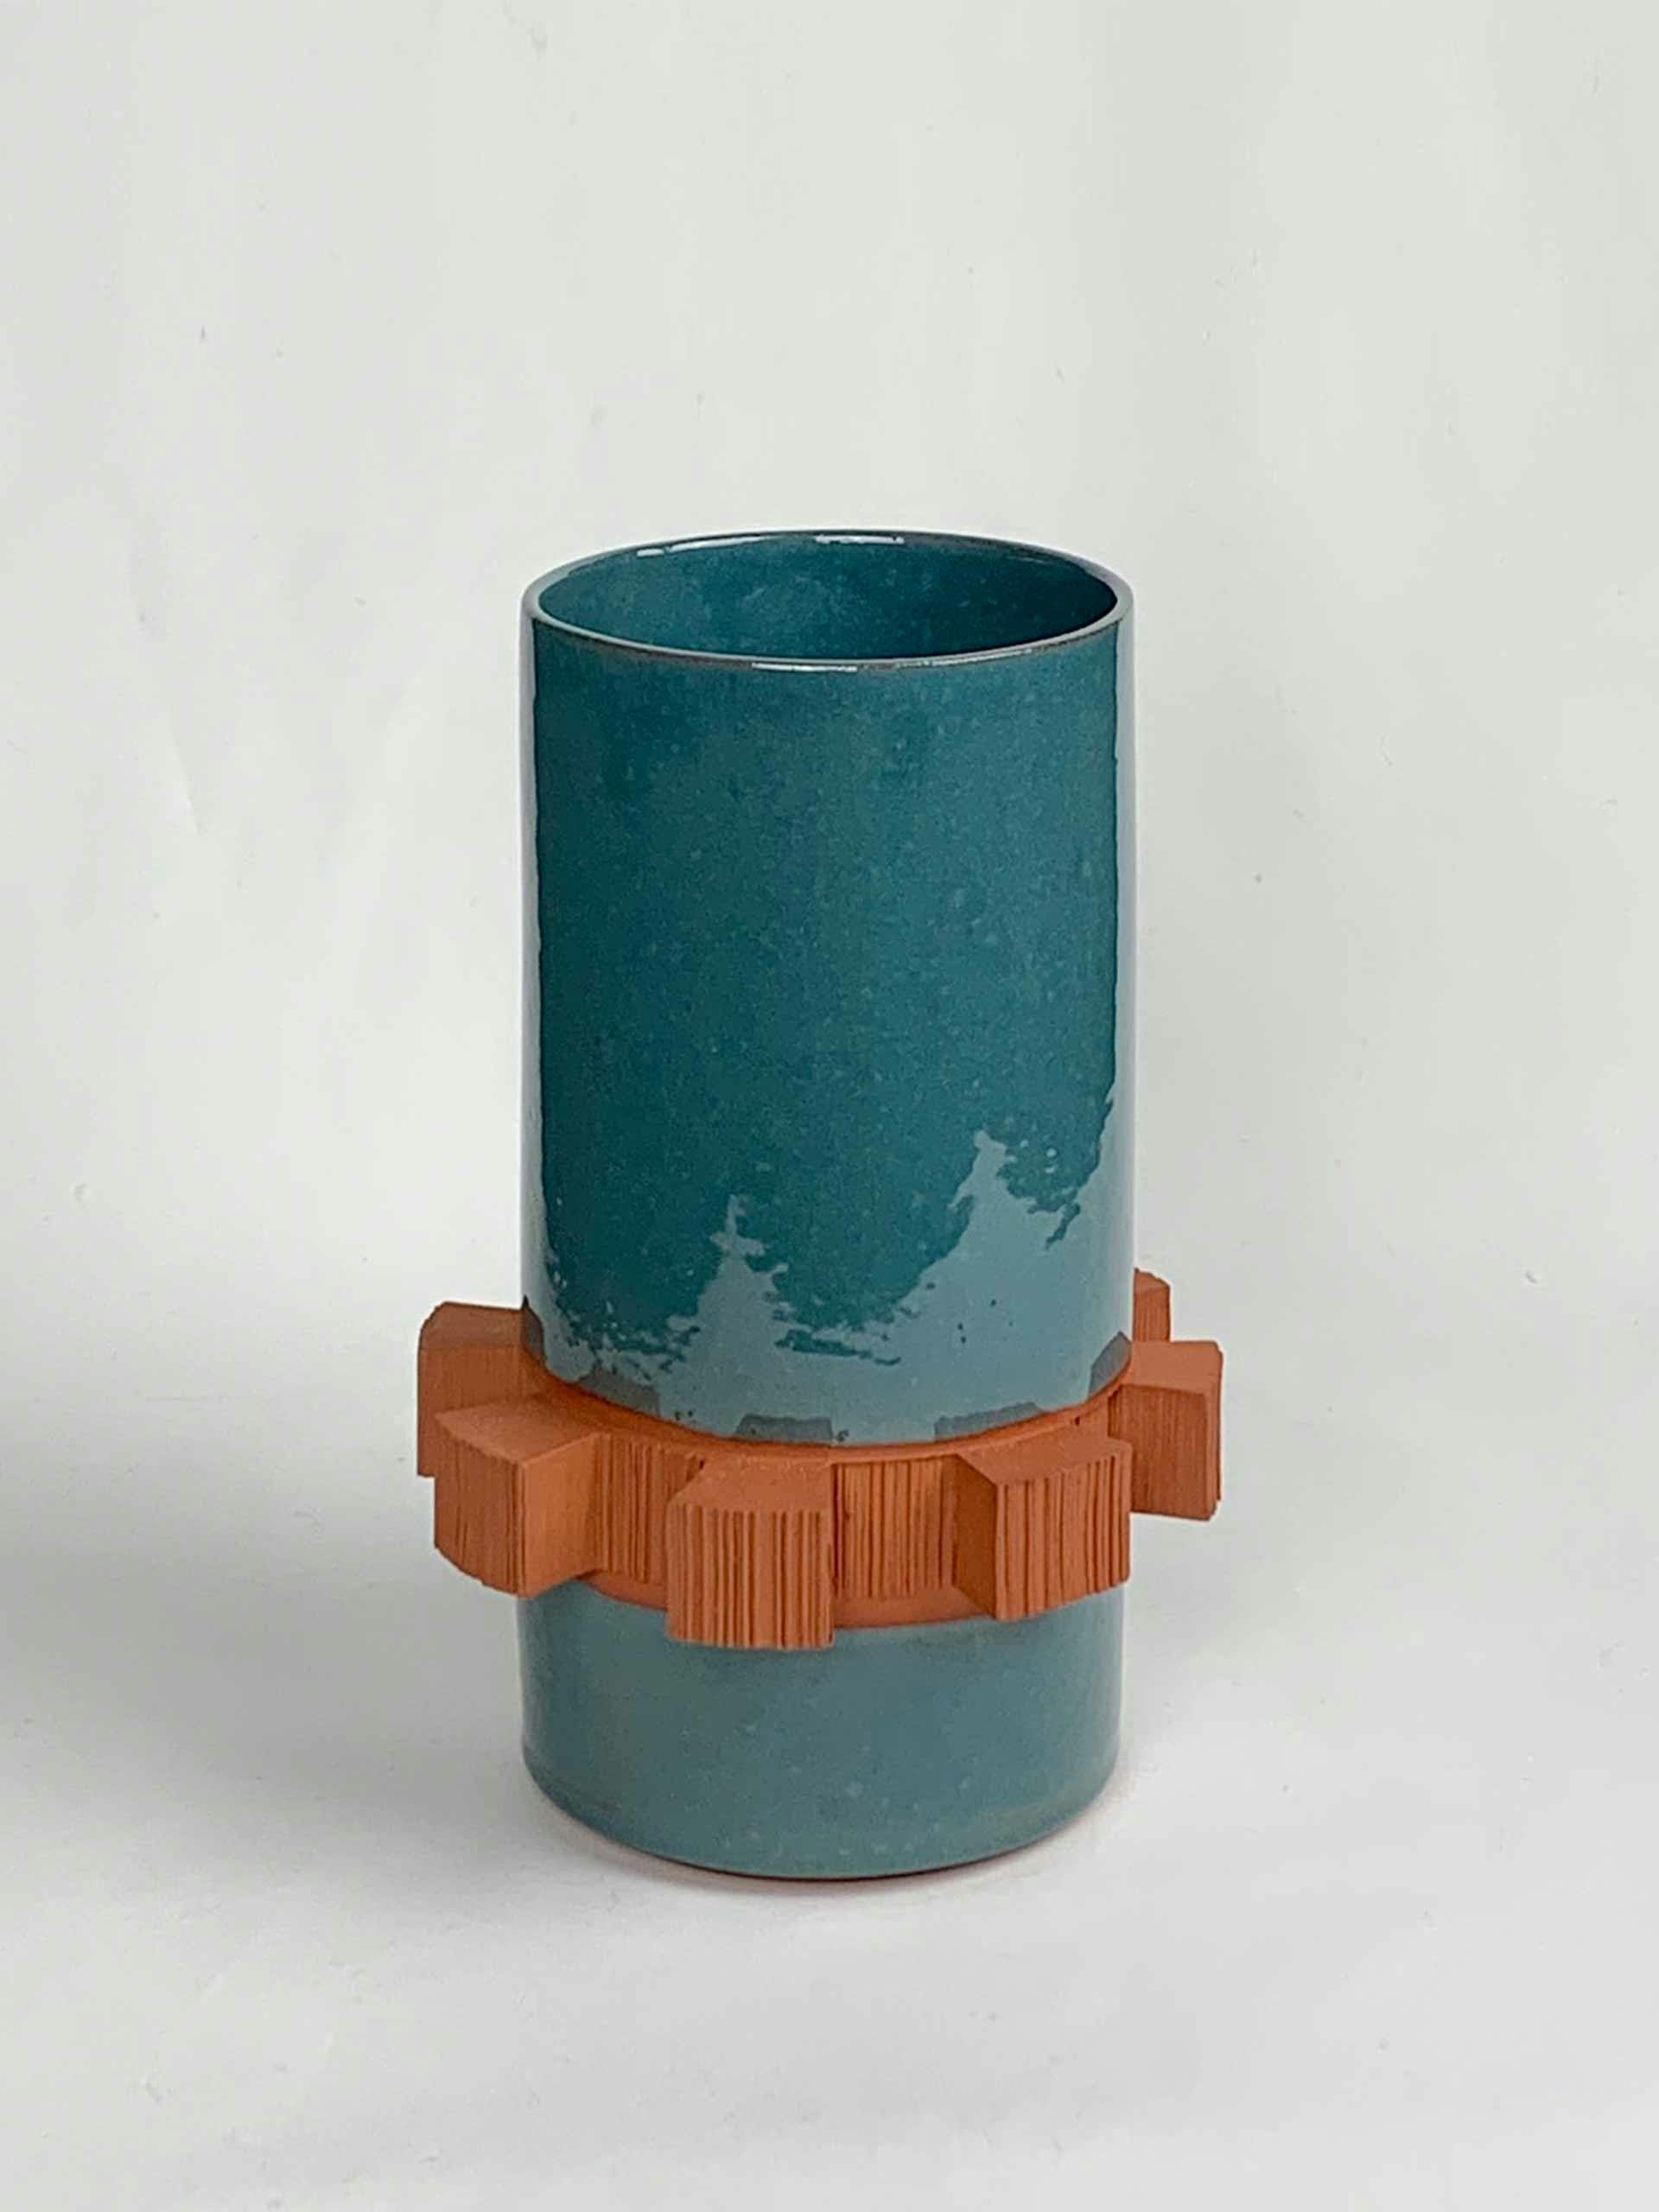 Textured terracotta vase.